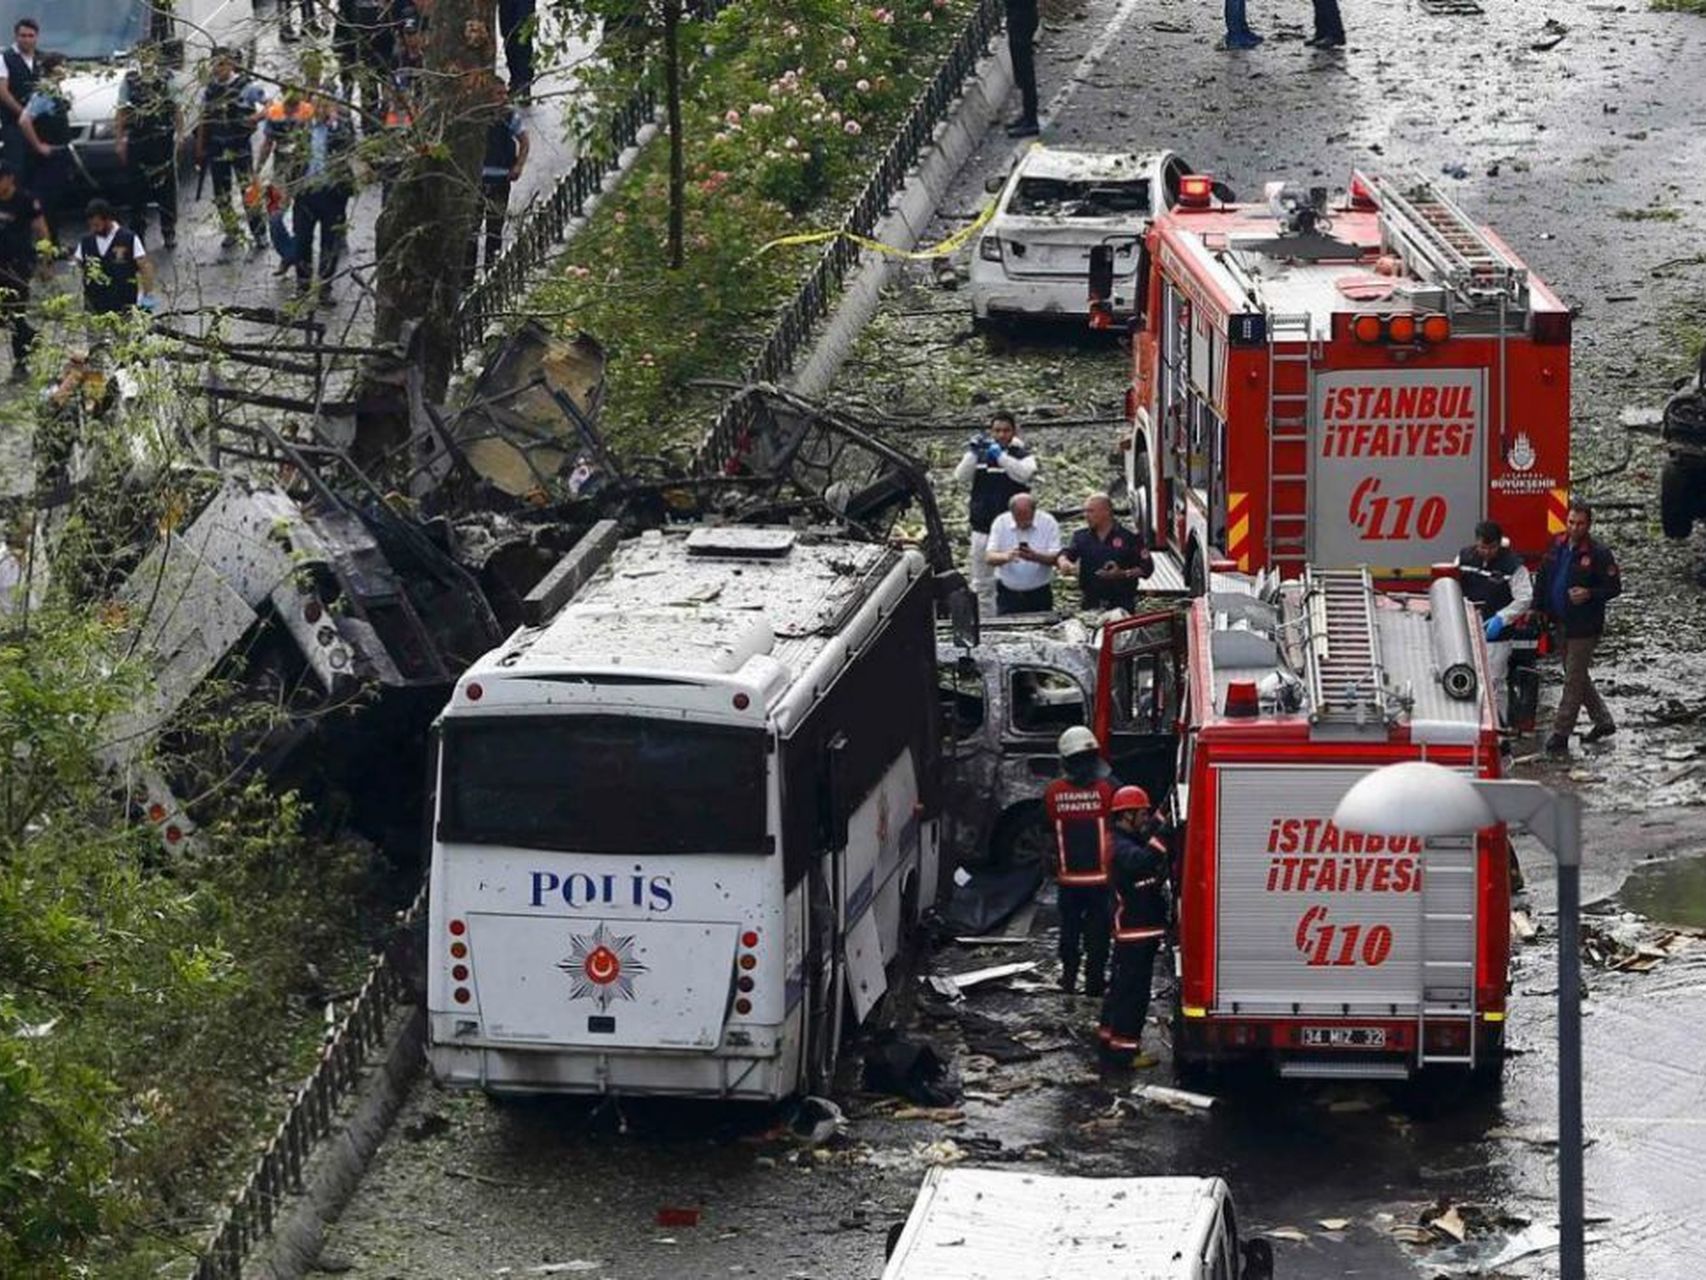  Coche bomba deja 11 muertos y 36 heridos en el centro de Estambul